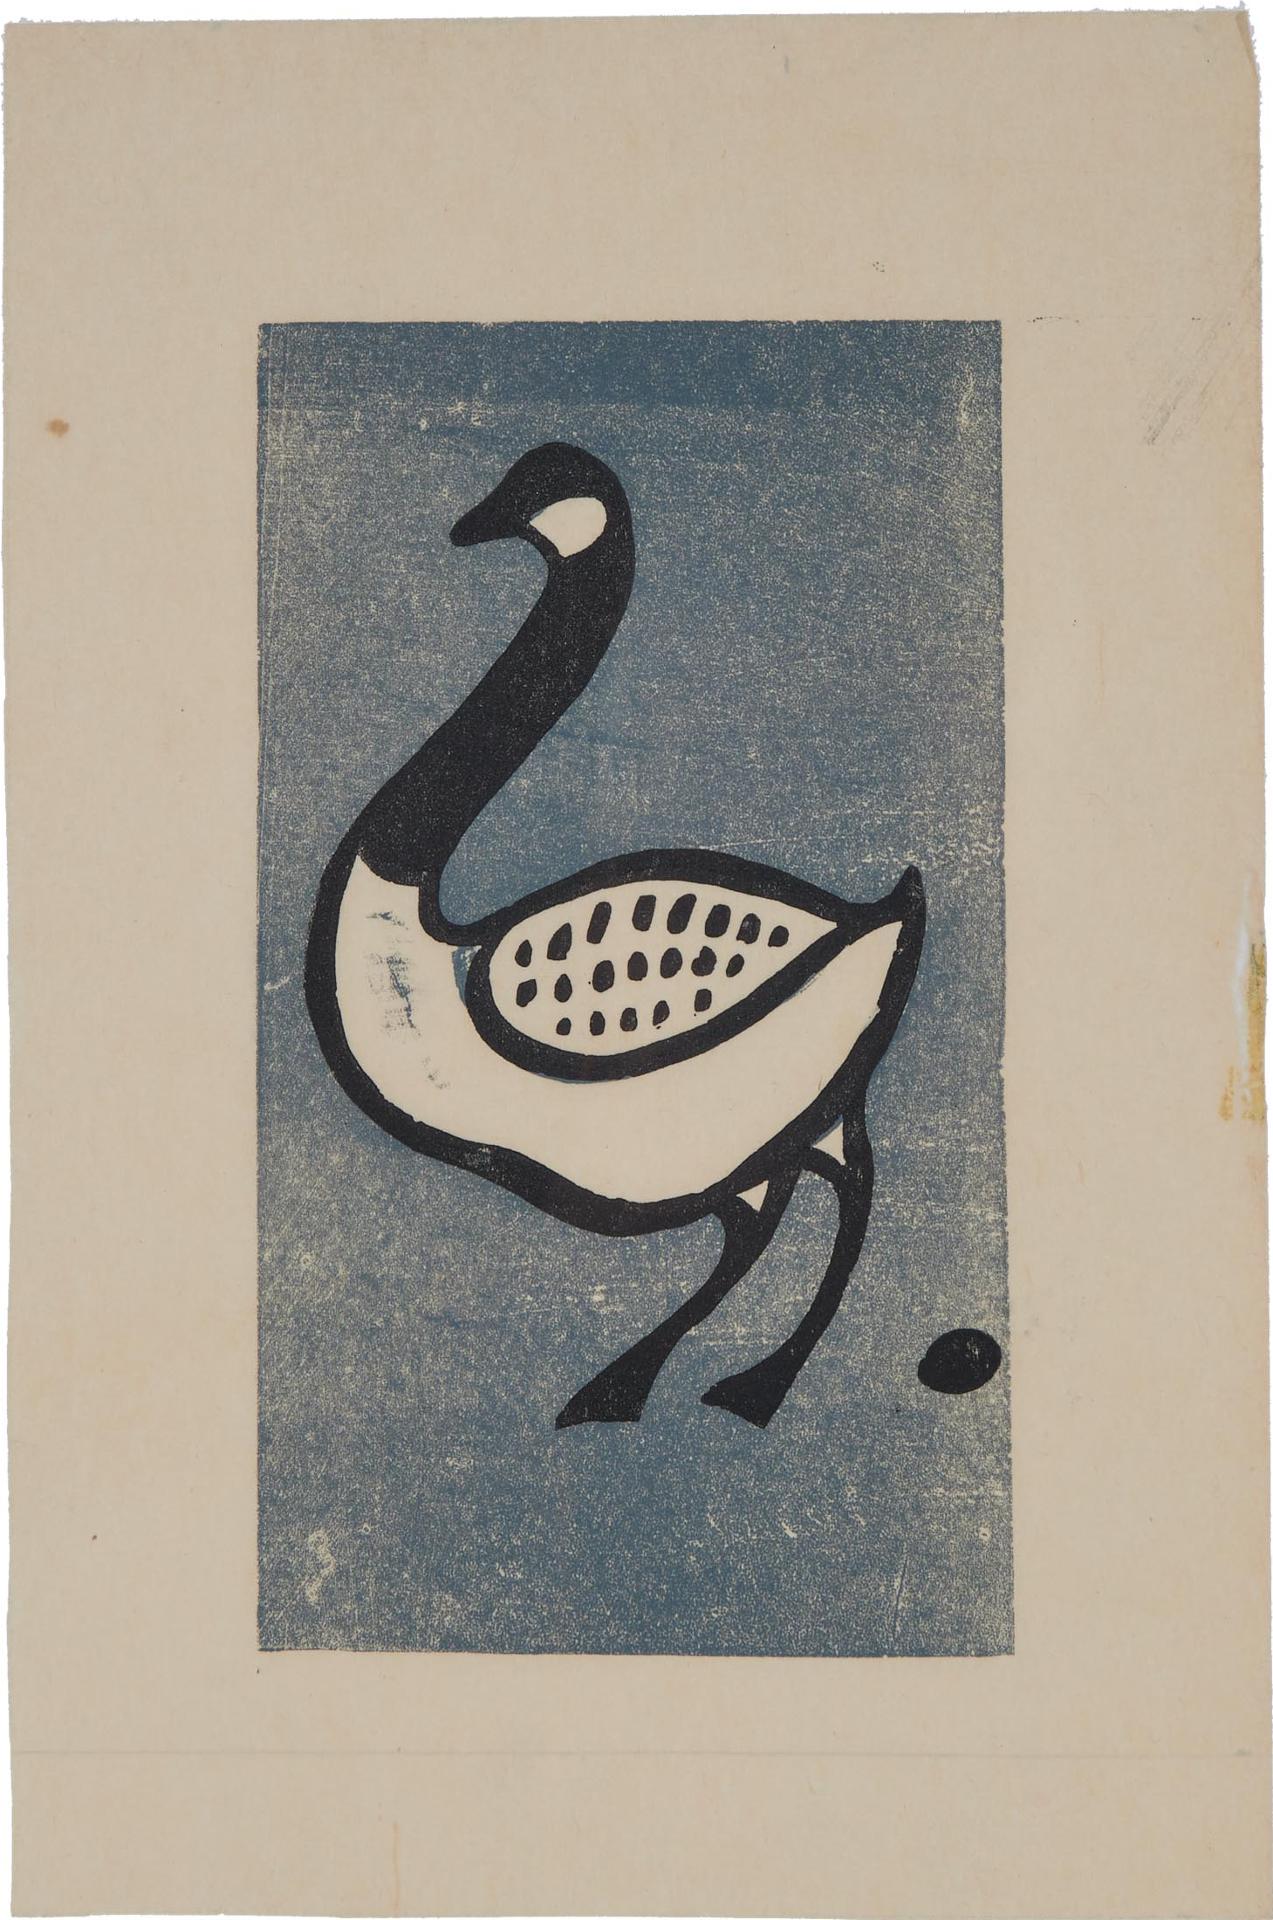 Kalingo Or Kudlalak Or Iyola Kingwatsiak (1933) - Canada Goose, 1957